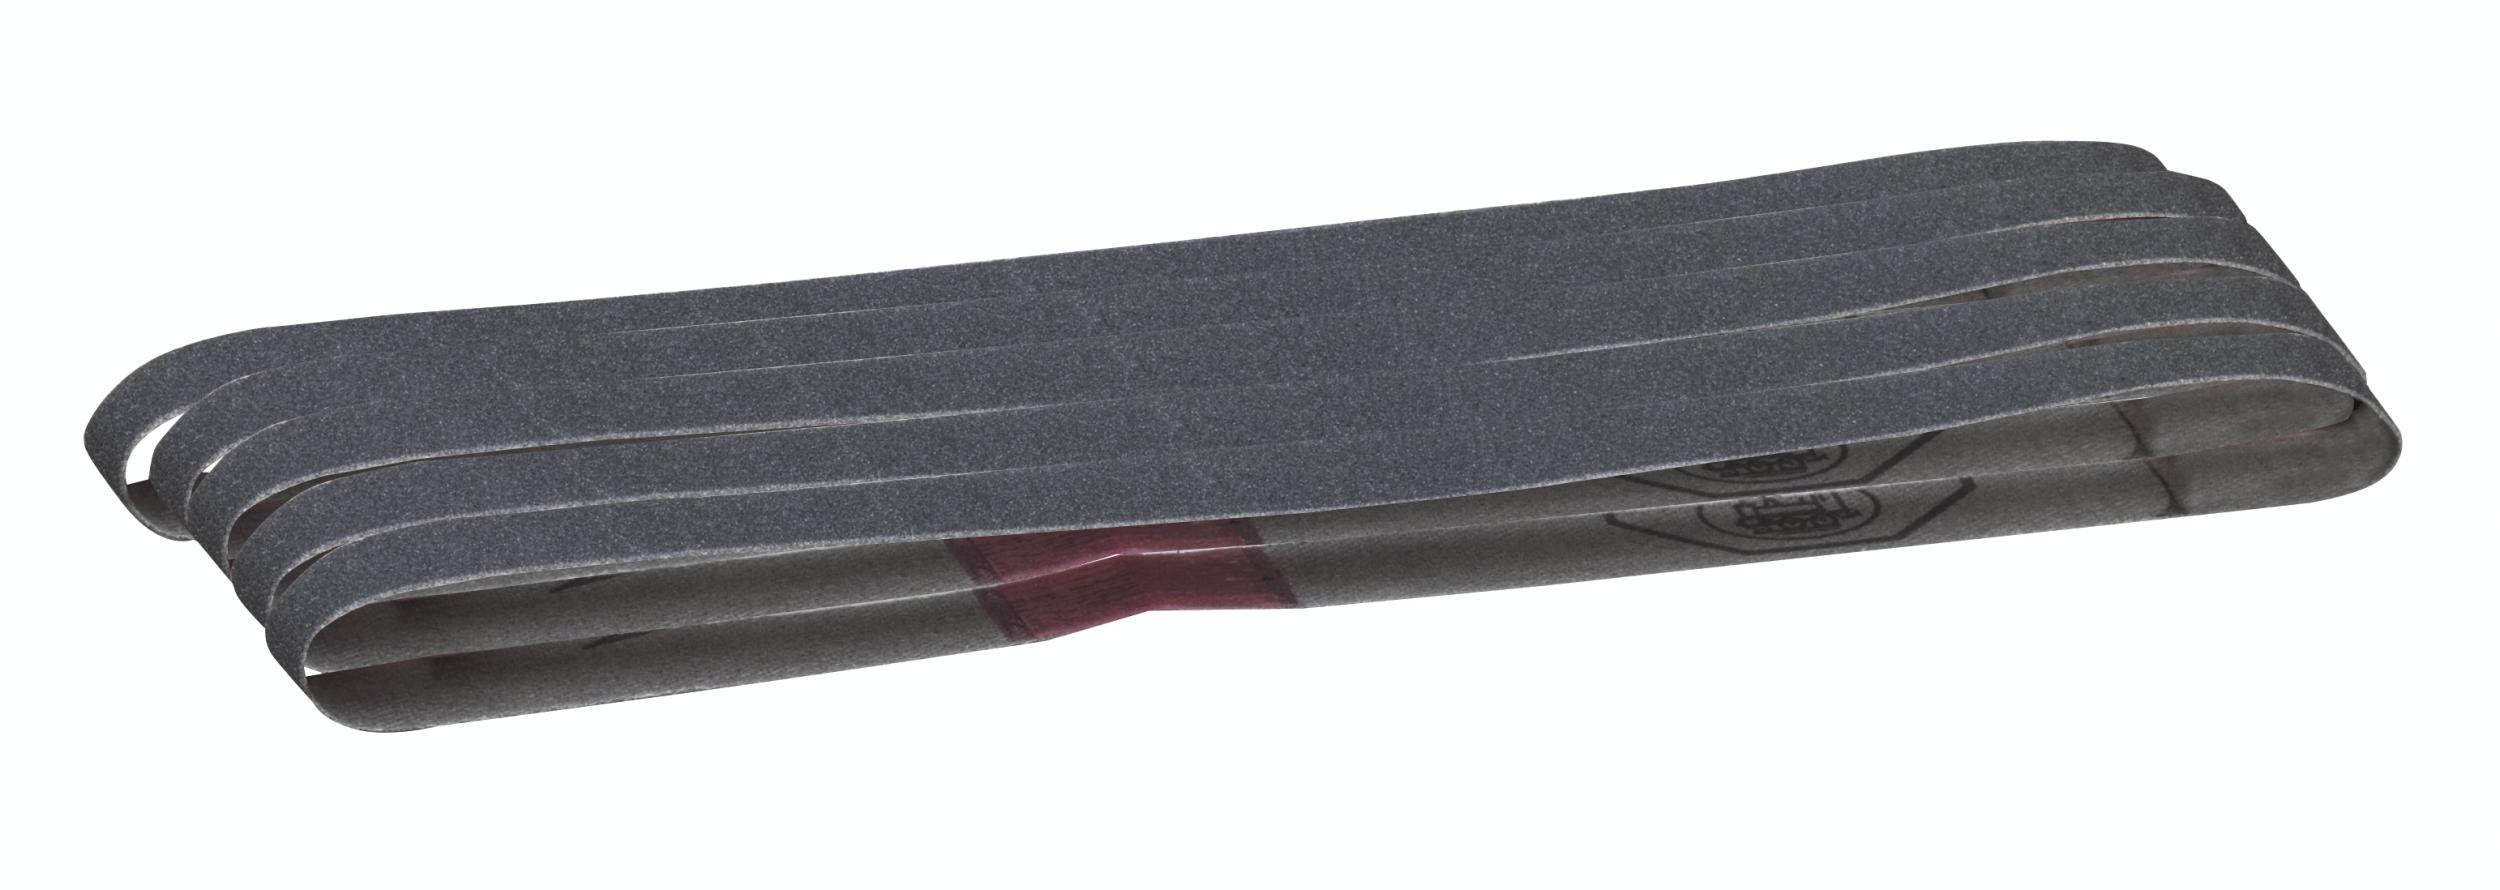 Proxxon Schleifbänder für BS/E, Sil-Carbid, K 180, 5 Stück